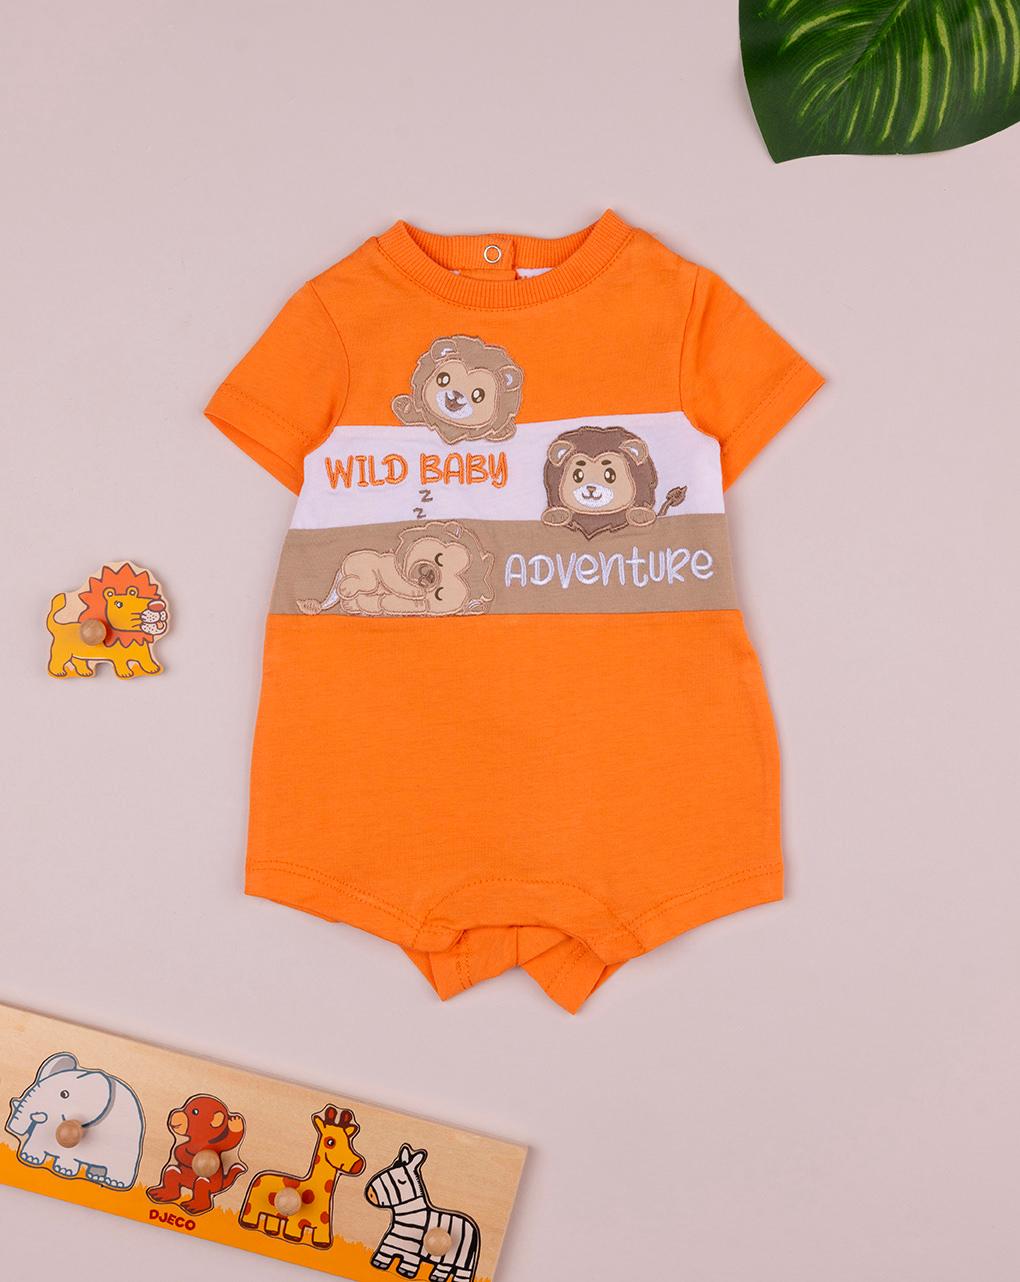 βρεφικό φορμάκι πορτοκαλί wild baby adventure για αγόρι - Prénatal